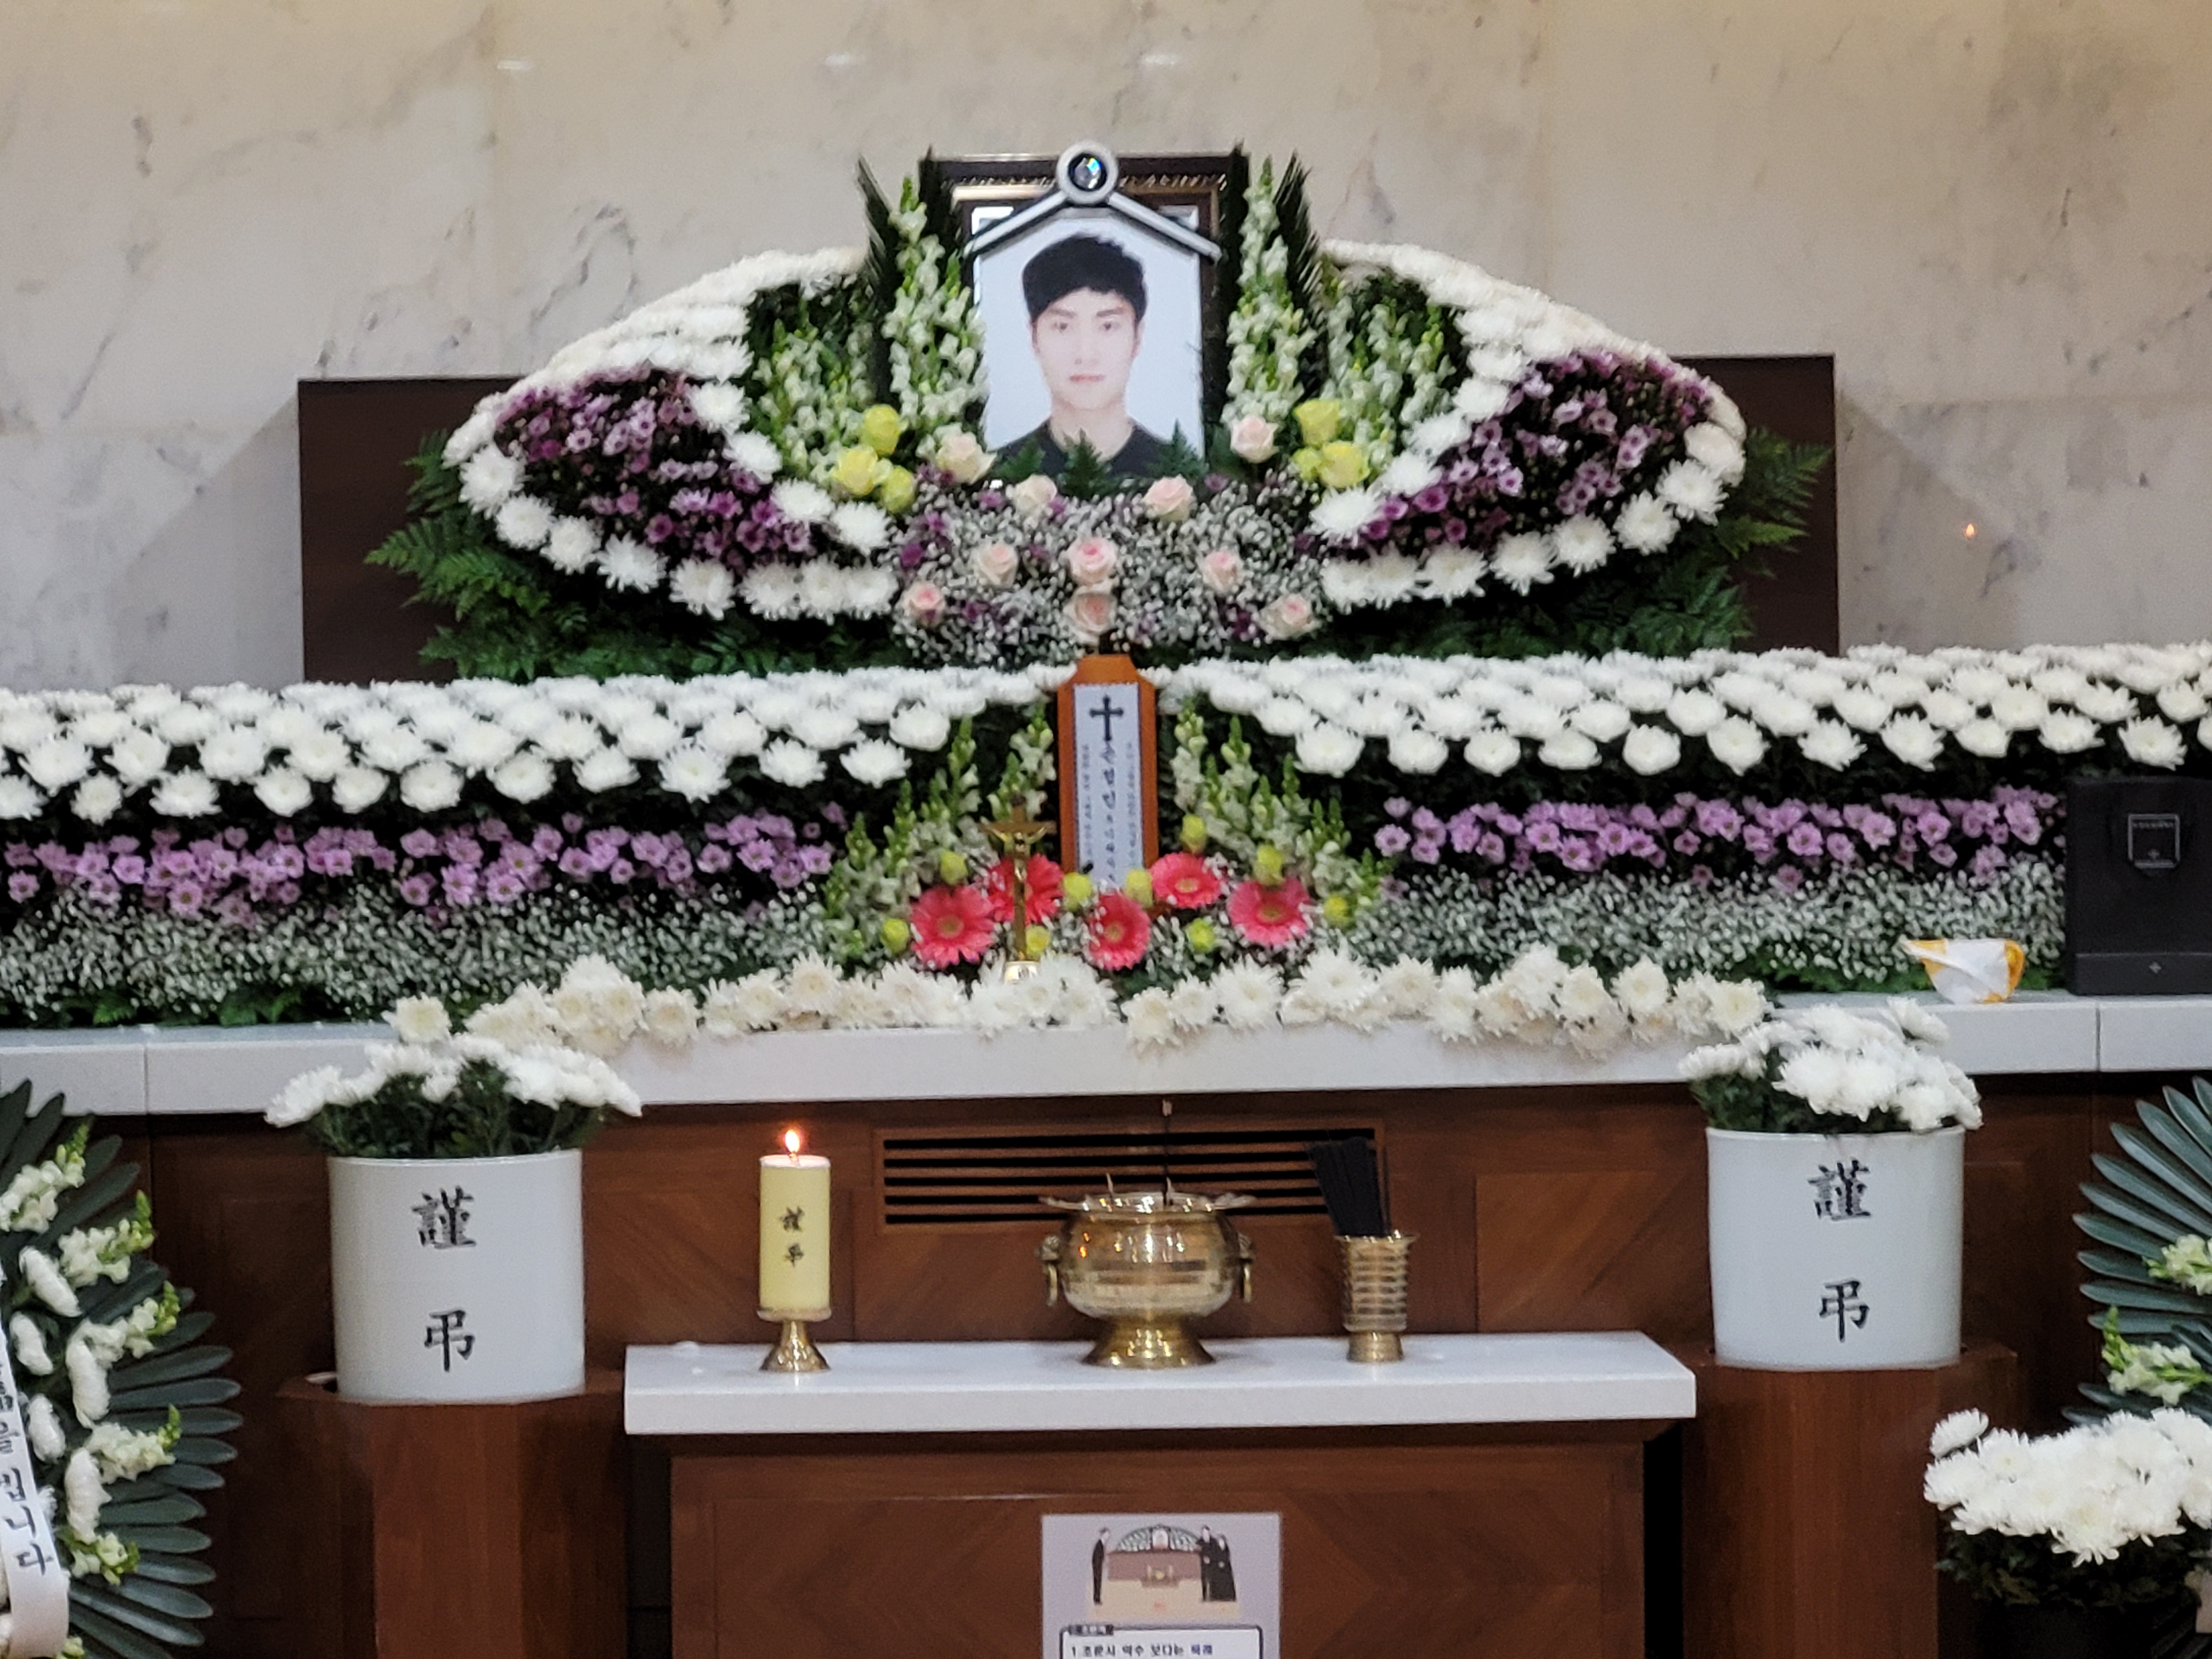 지난달 25일 실종된 뒤 닷새만에 돌아온 고 손정민 씨의 빈소가 서울성모병원에 차려져 있다. 최영권 기자 story@seoul.co.kr